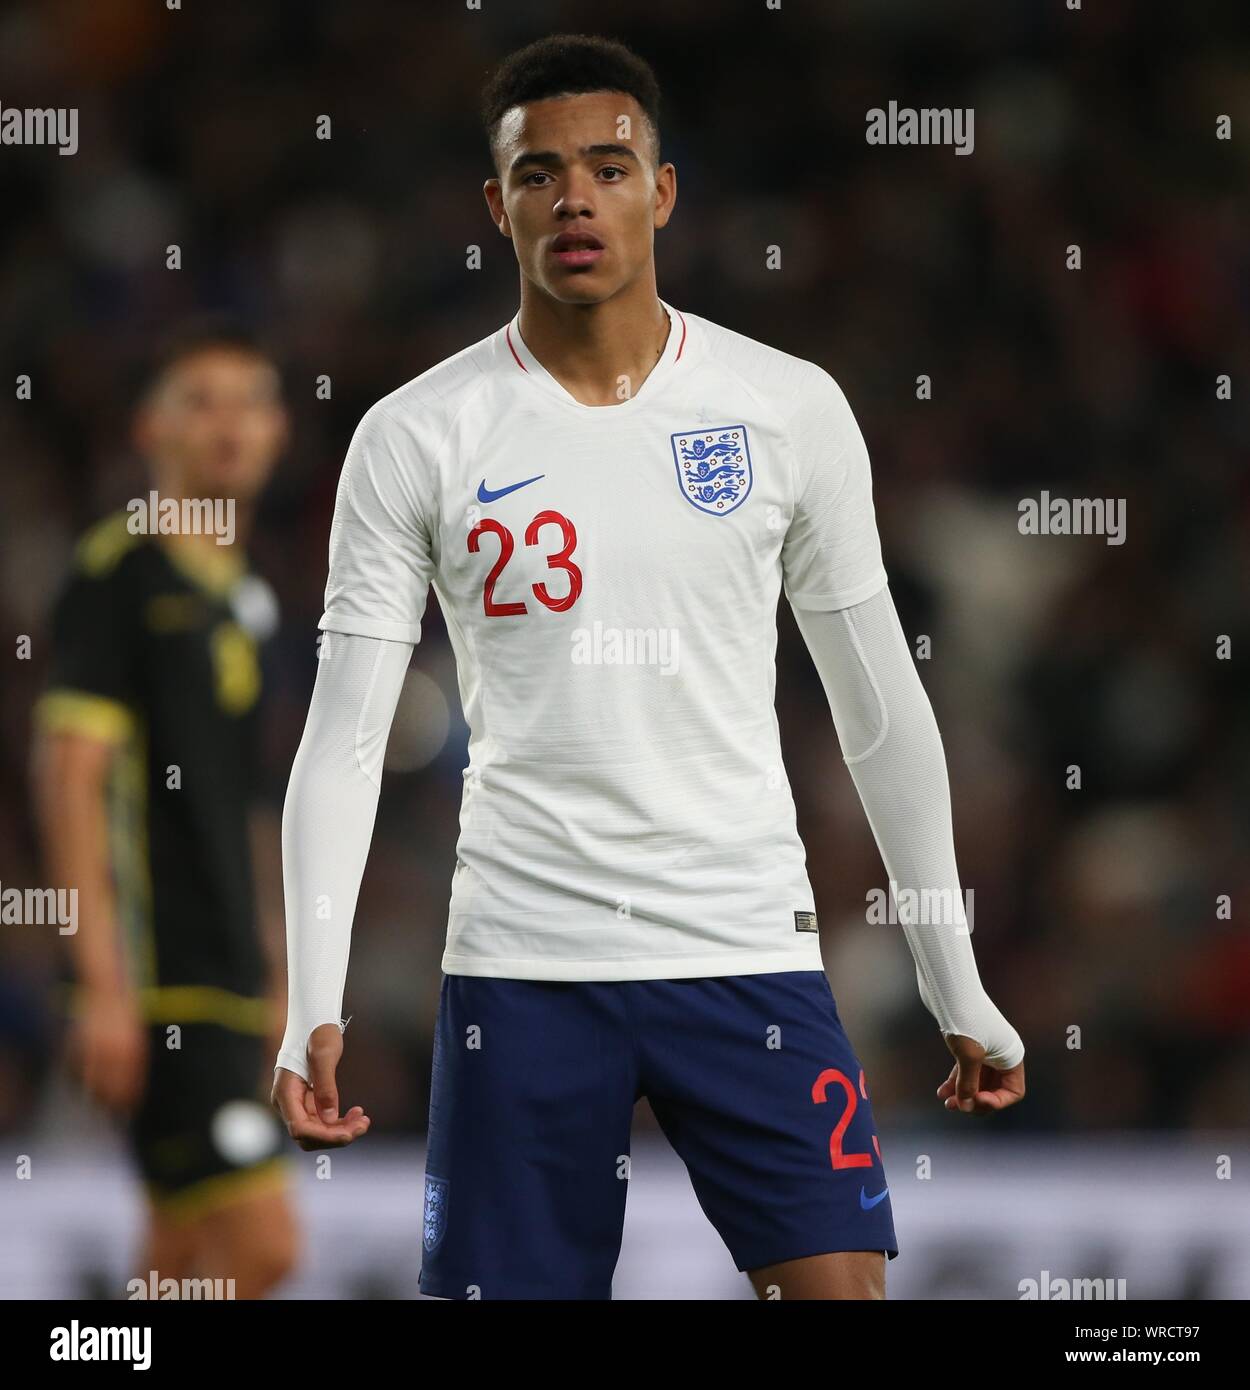 MASON GREENWOOD, ENGLAND U21, 2019 Stock Photo